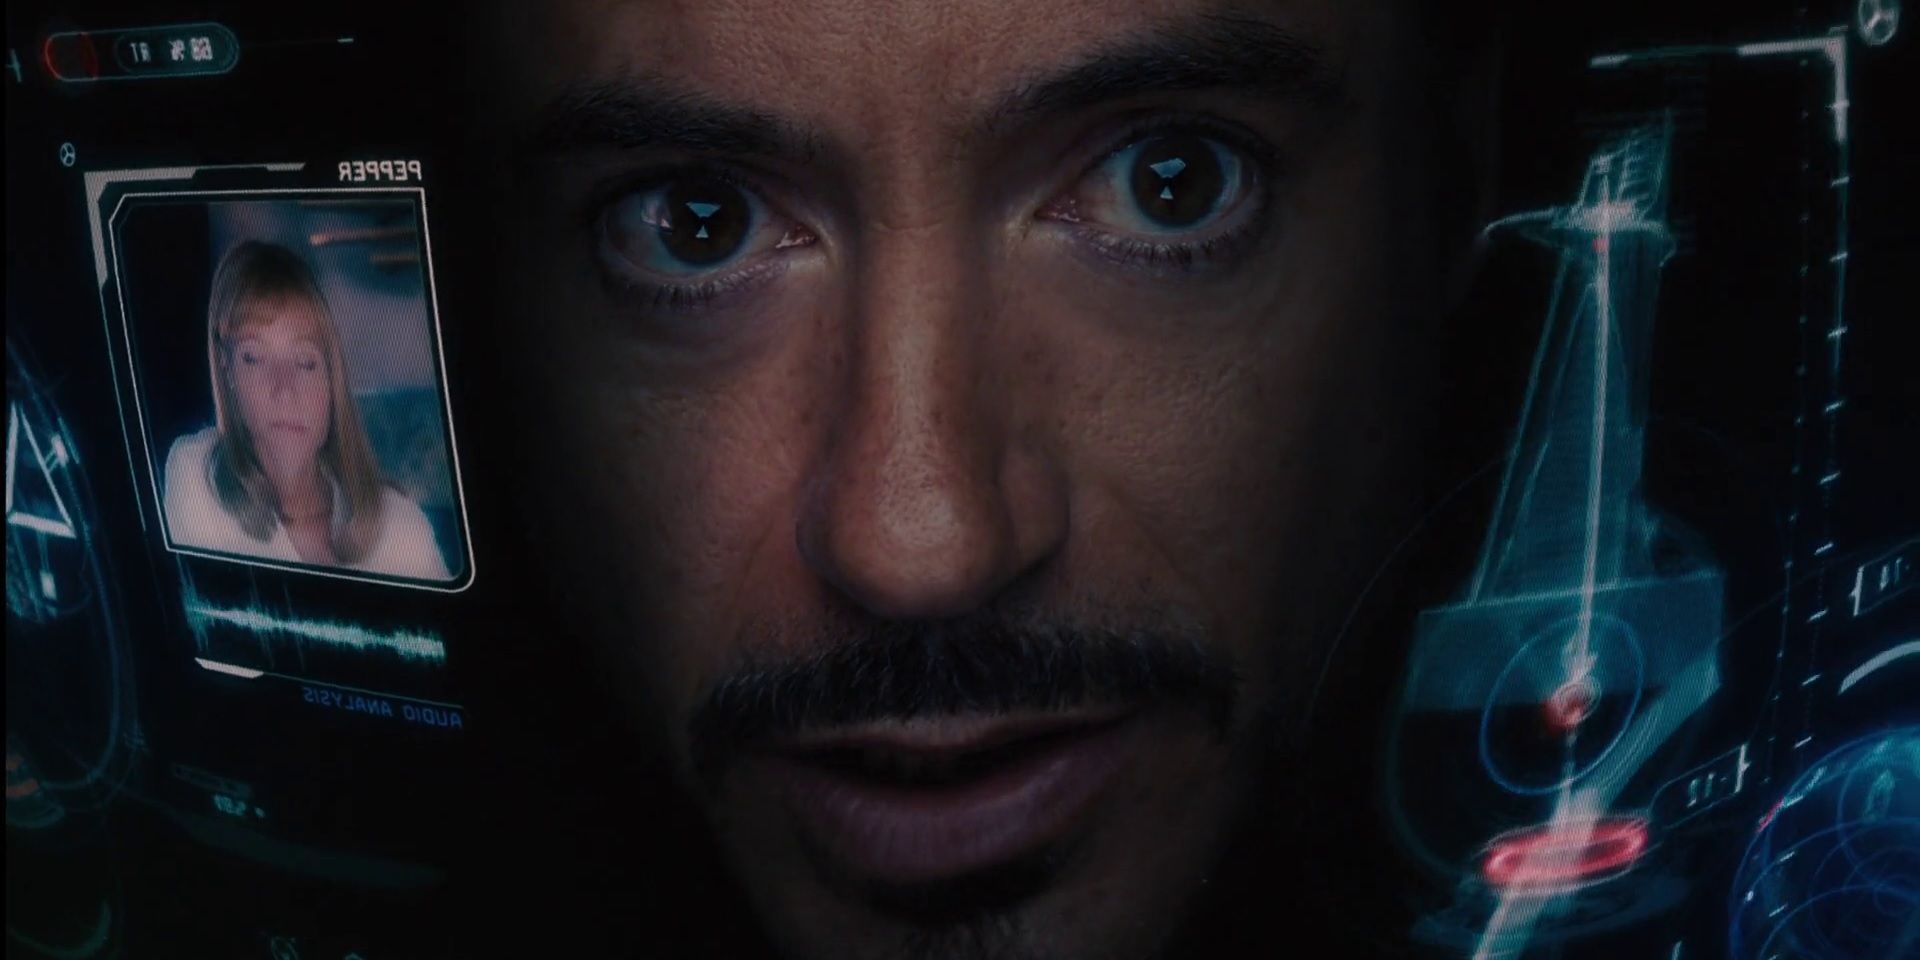 Tony_Stark_in_the_Iron_Man_armor